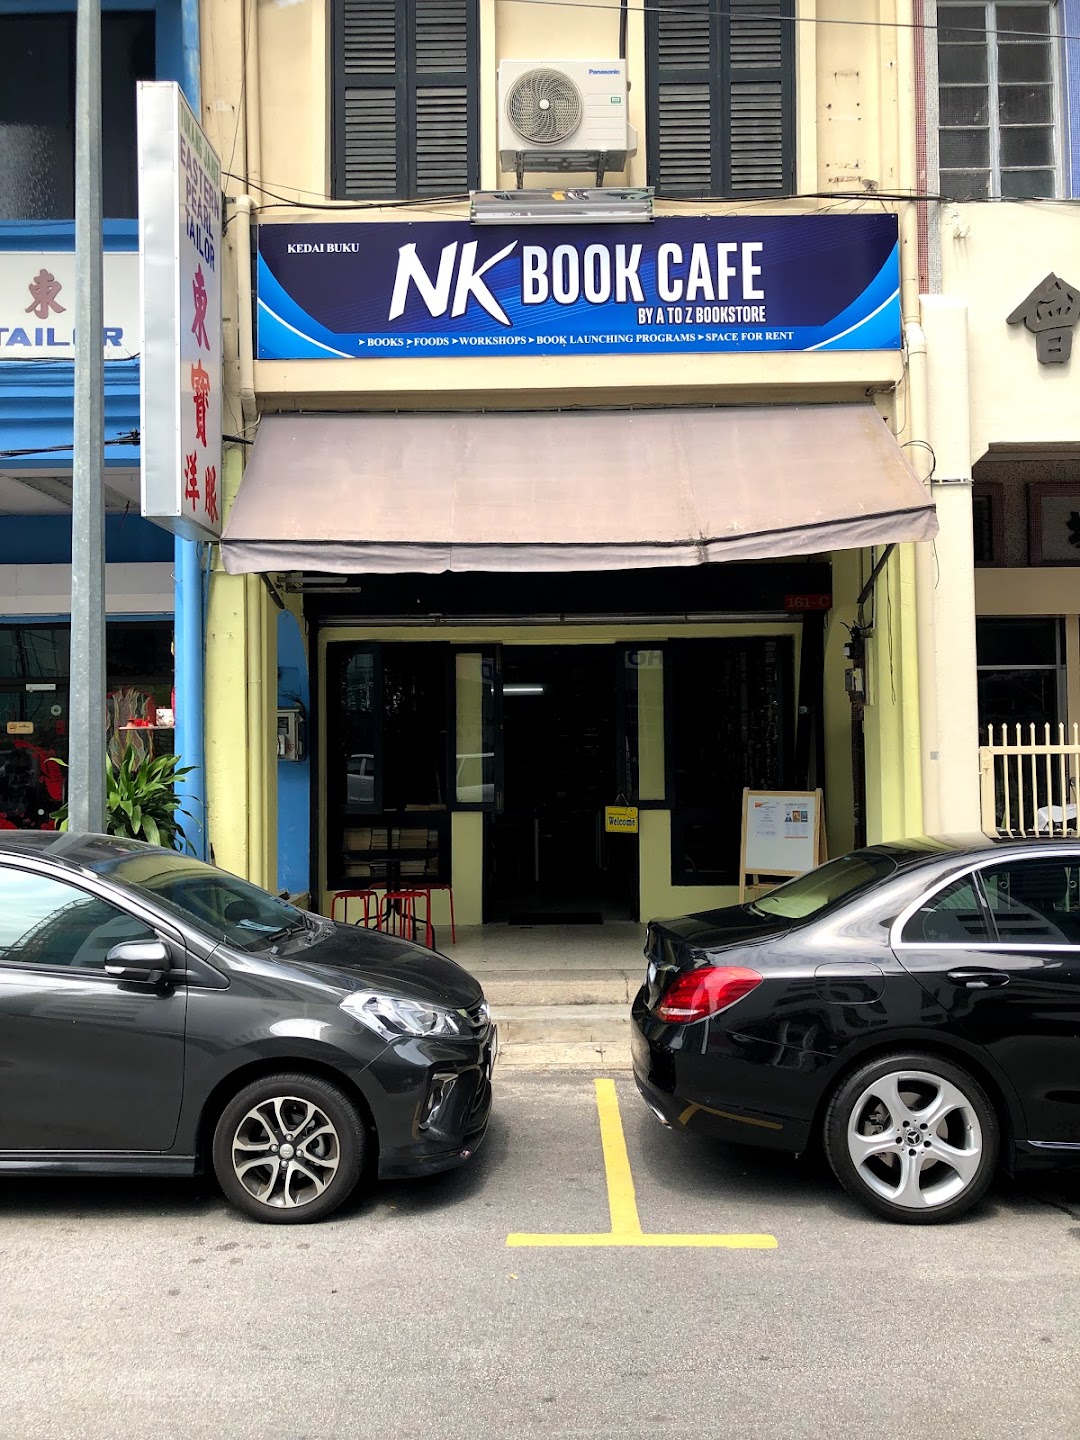 NK BOOK CAFE